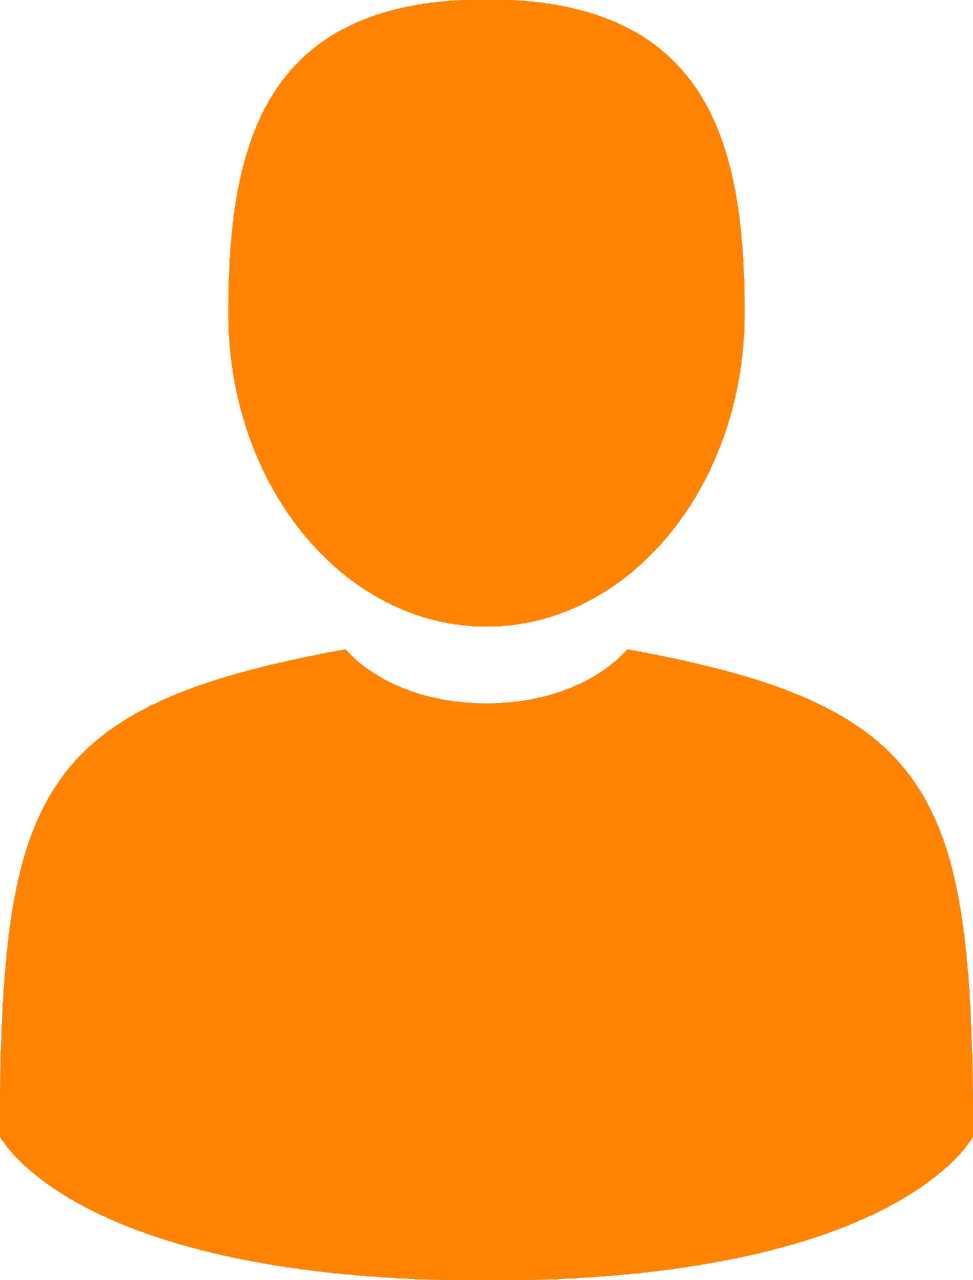 A Orange Silhouette Of A Person